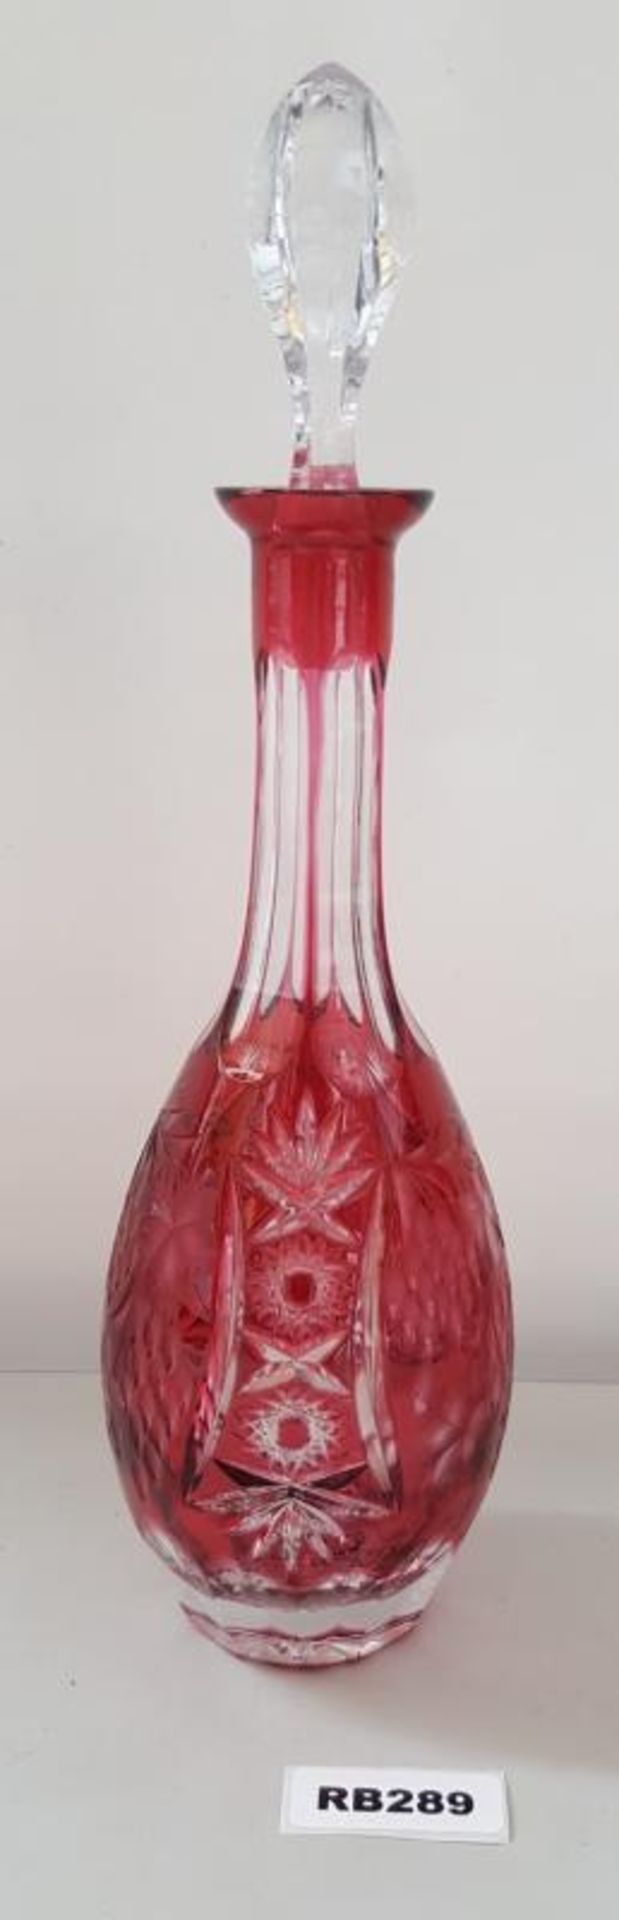 1 x Bohemian Antique Cranberry Cut Glass Decanter H39cm - Ref RB289 E - CL334 - Location: Altrincham